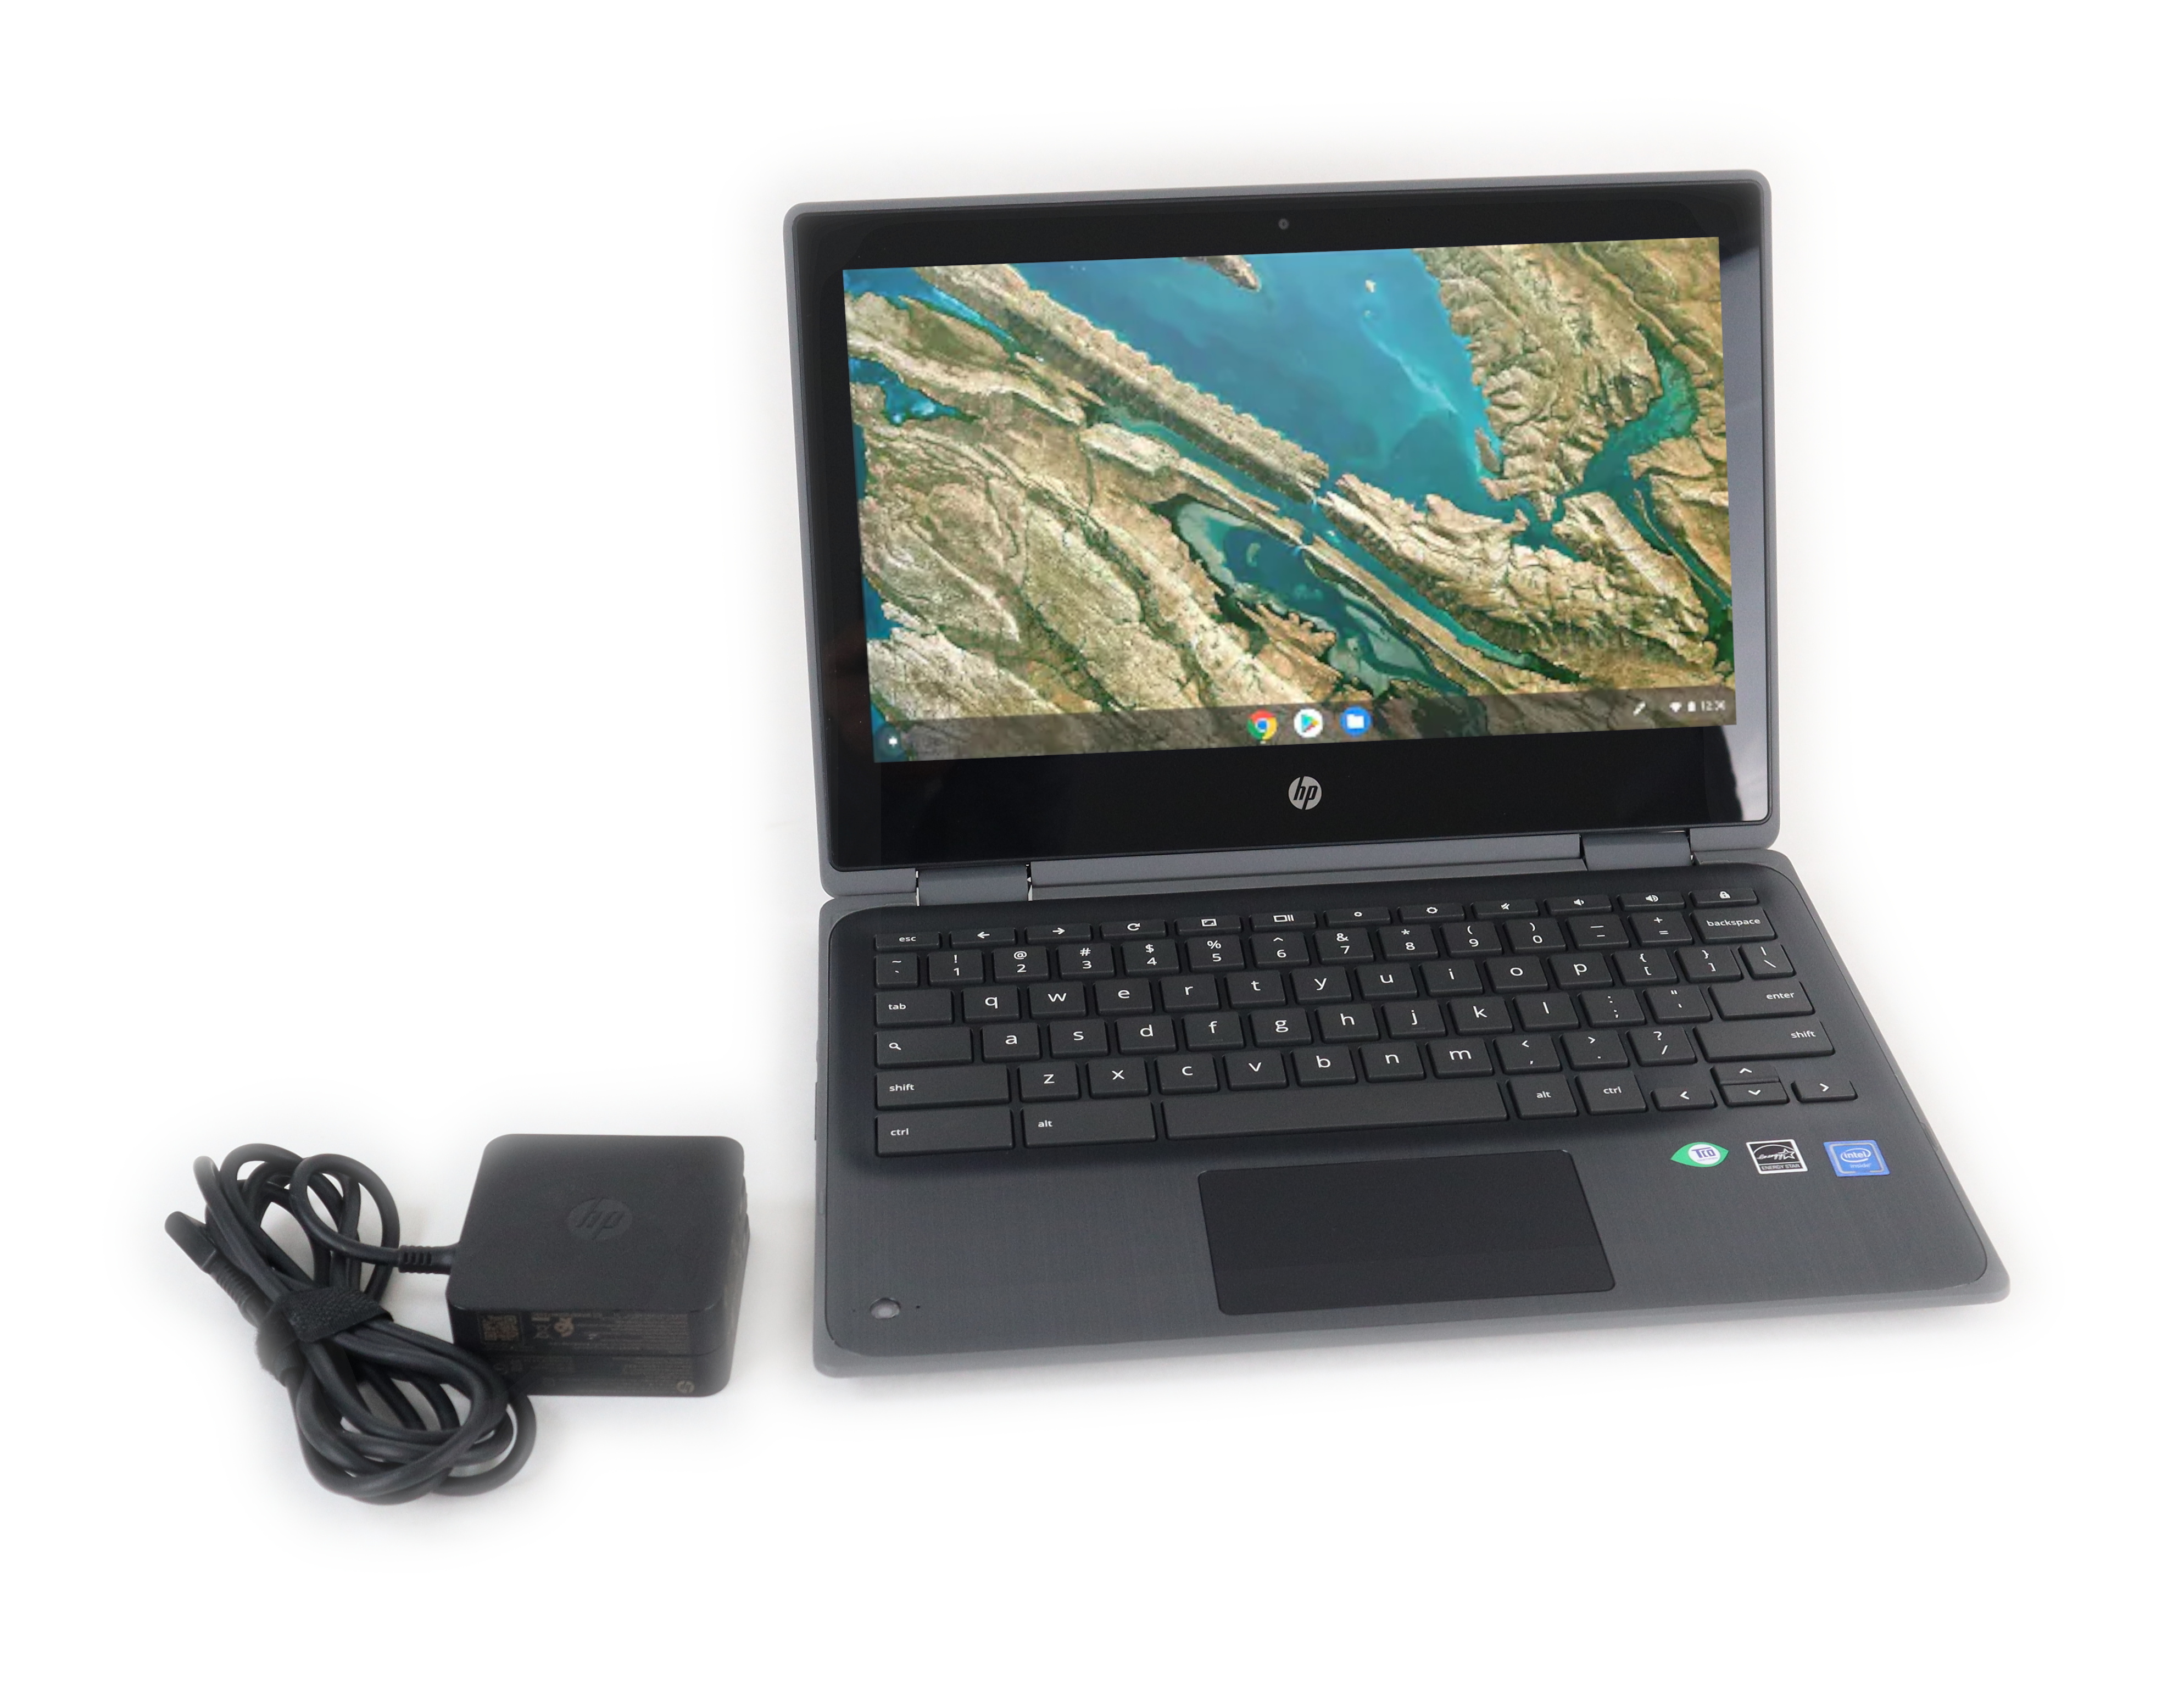 HP Chromebook x360 11 G3 EE 11.6" Touch Intel Celeron N4020 1.1GHz RAM 4GB eMMC 32GB 1A768UT#ABA